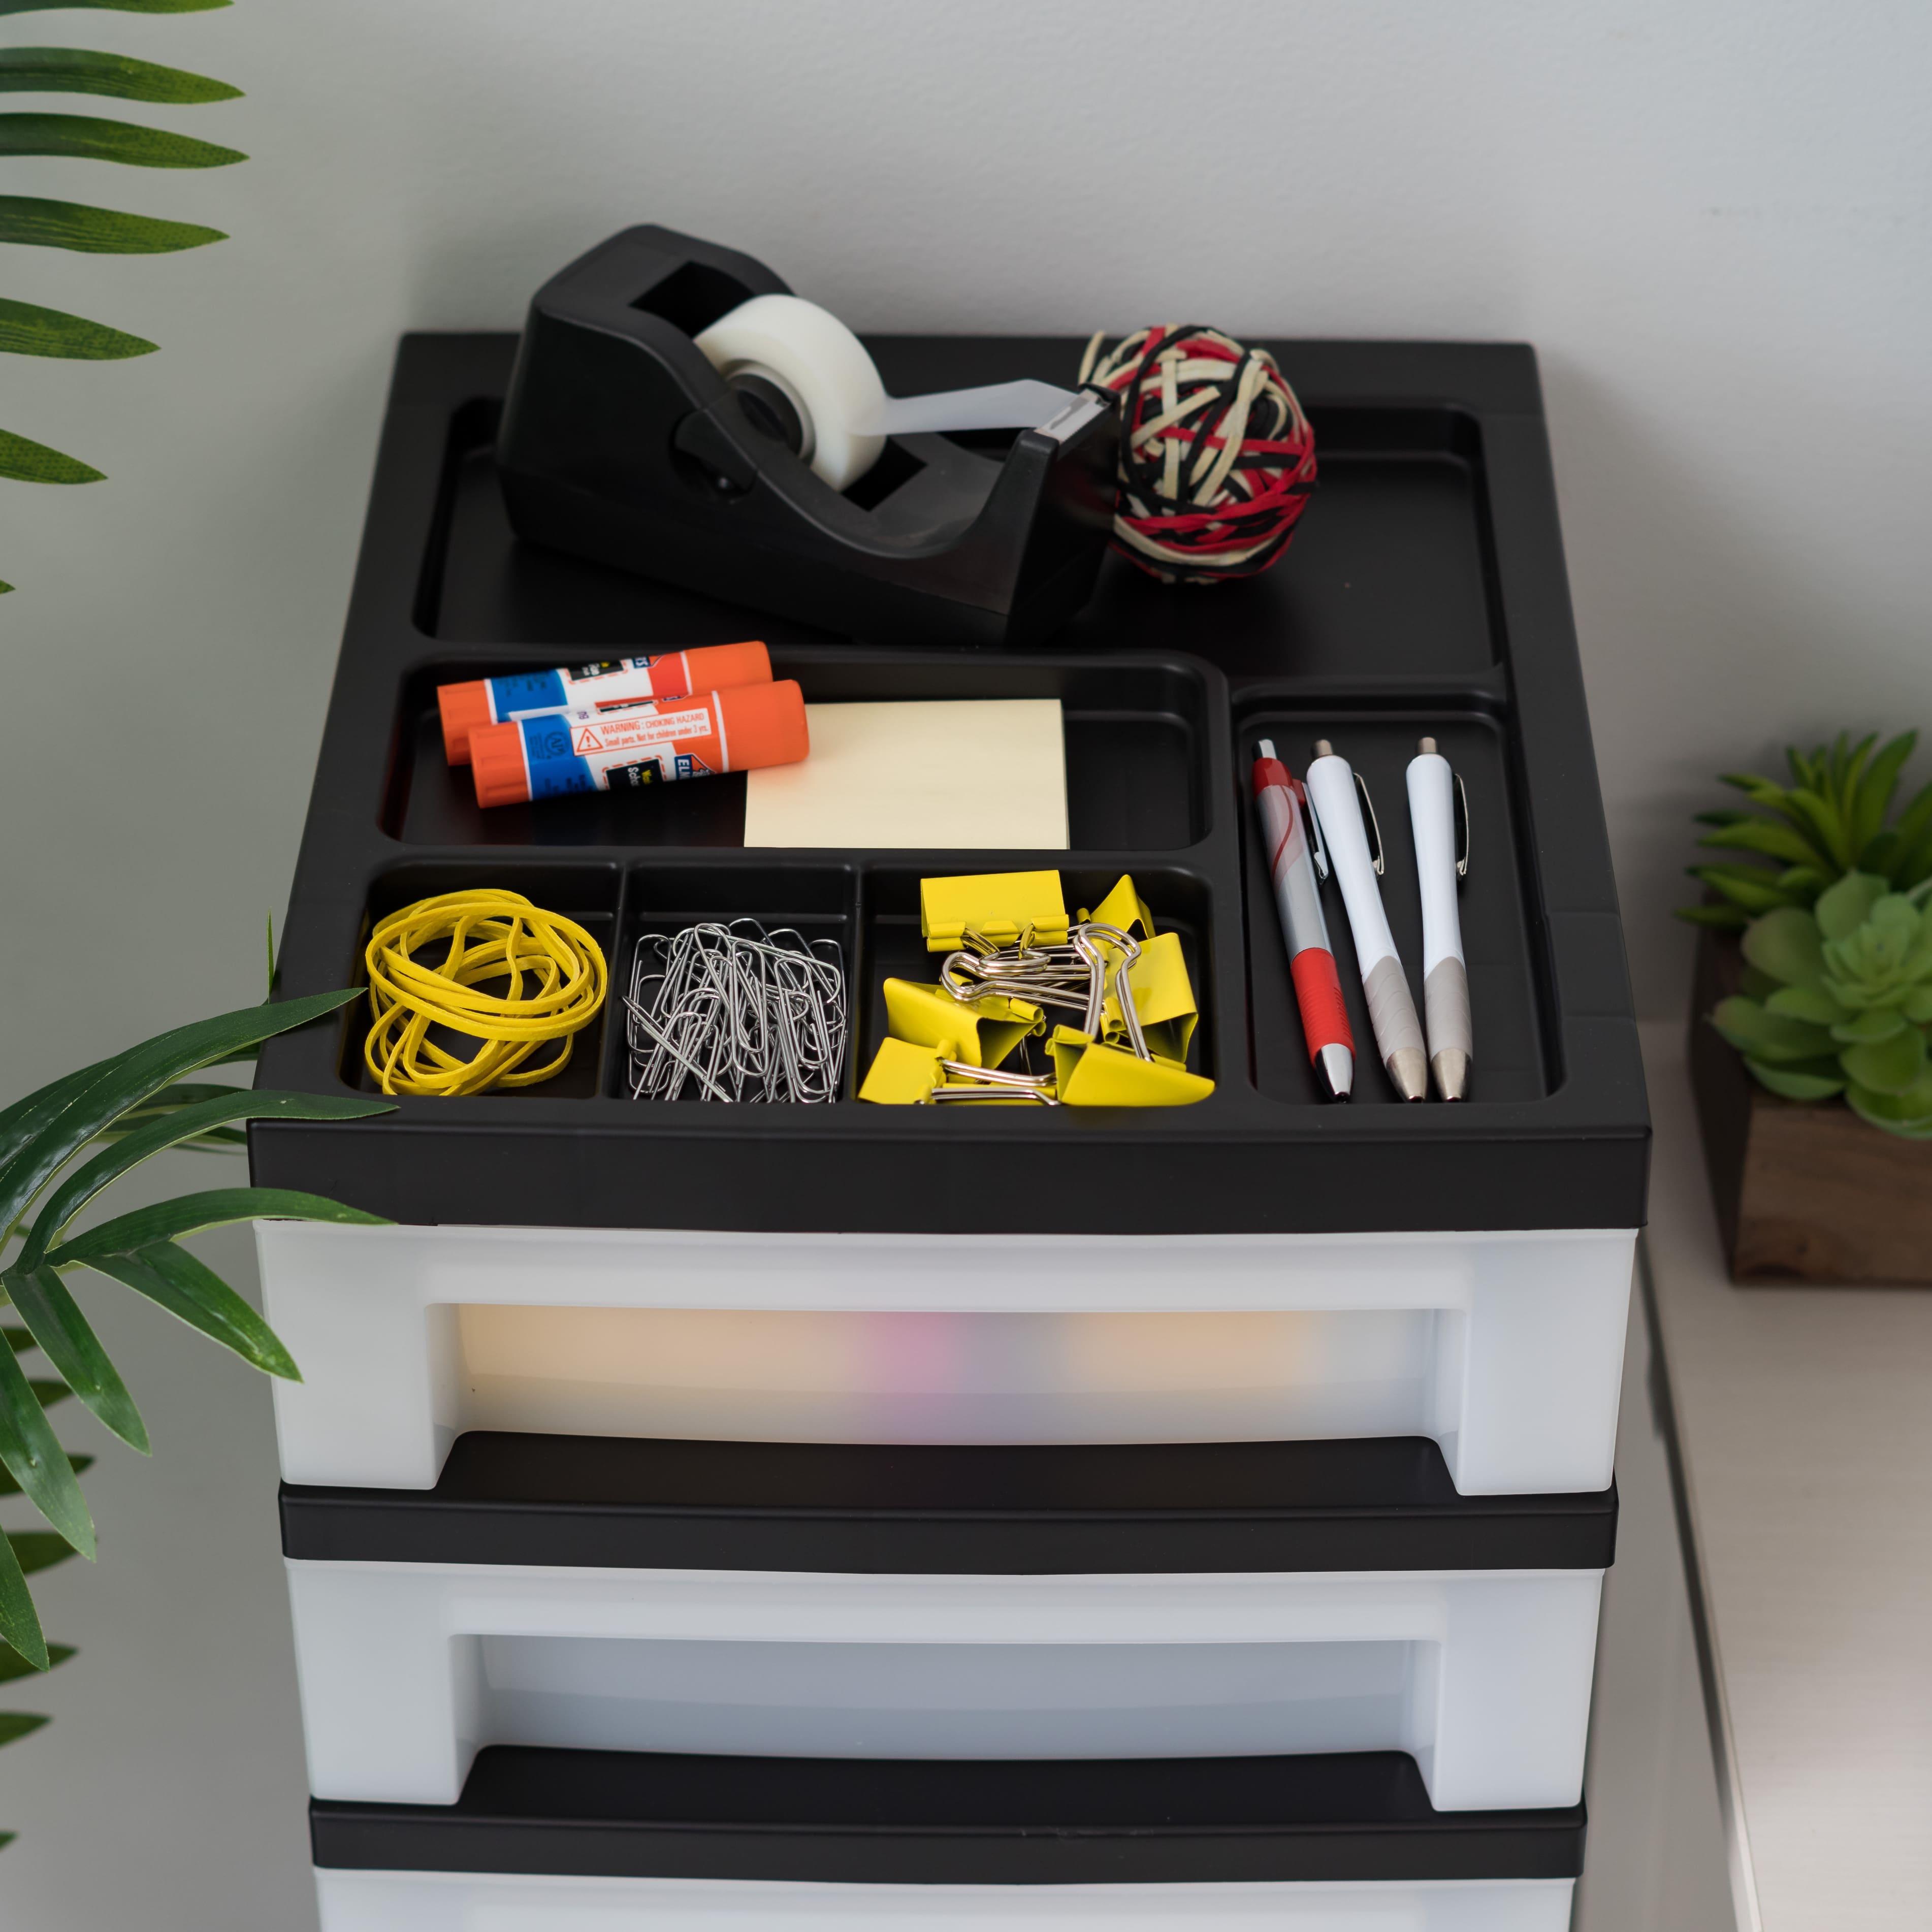 IRIS Black 9-Drawer Storage Cart with Organizer Top